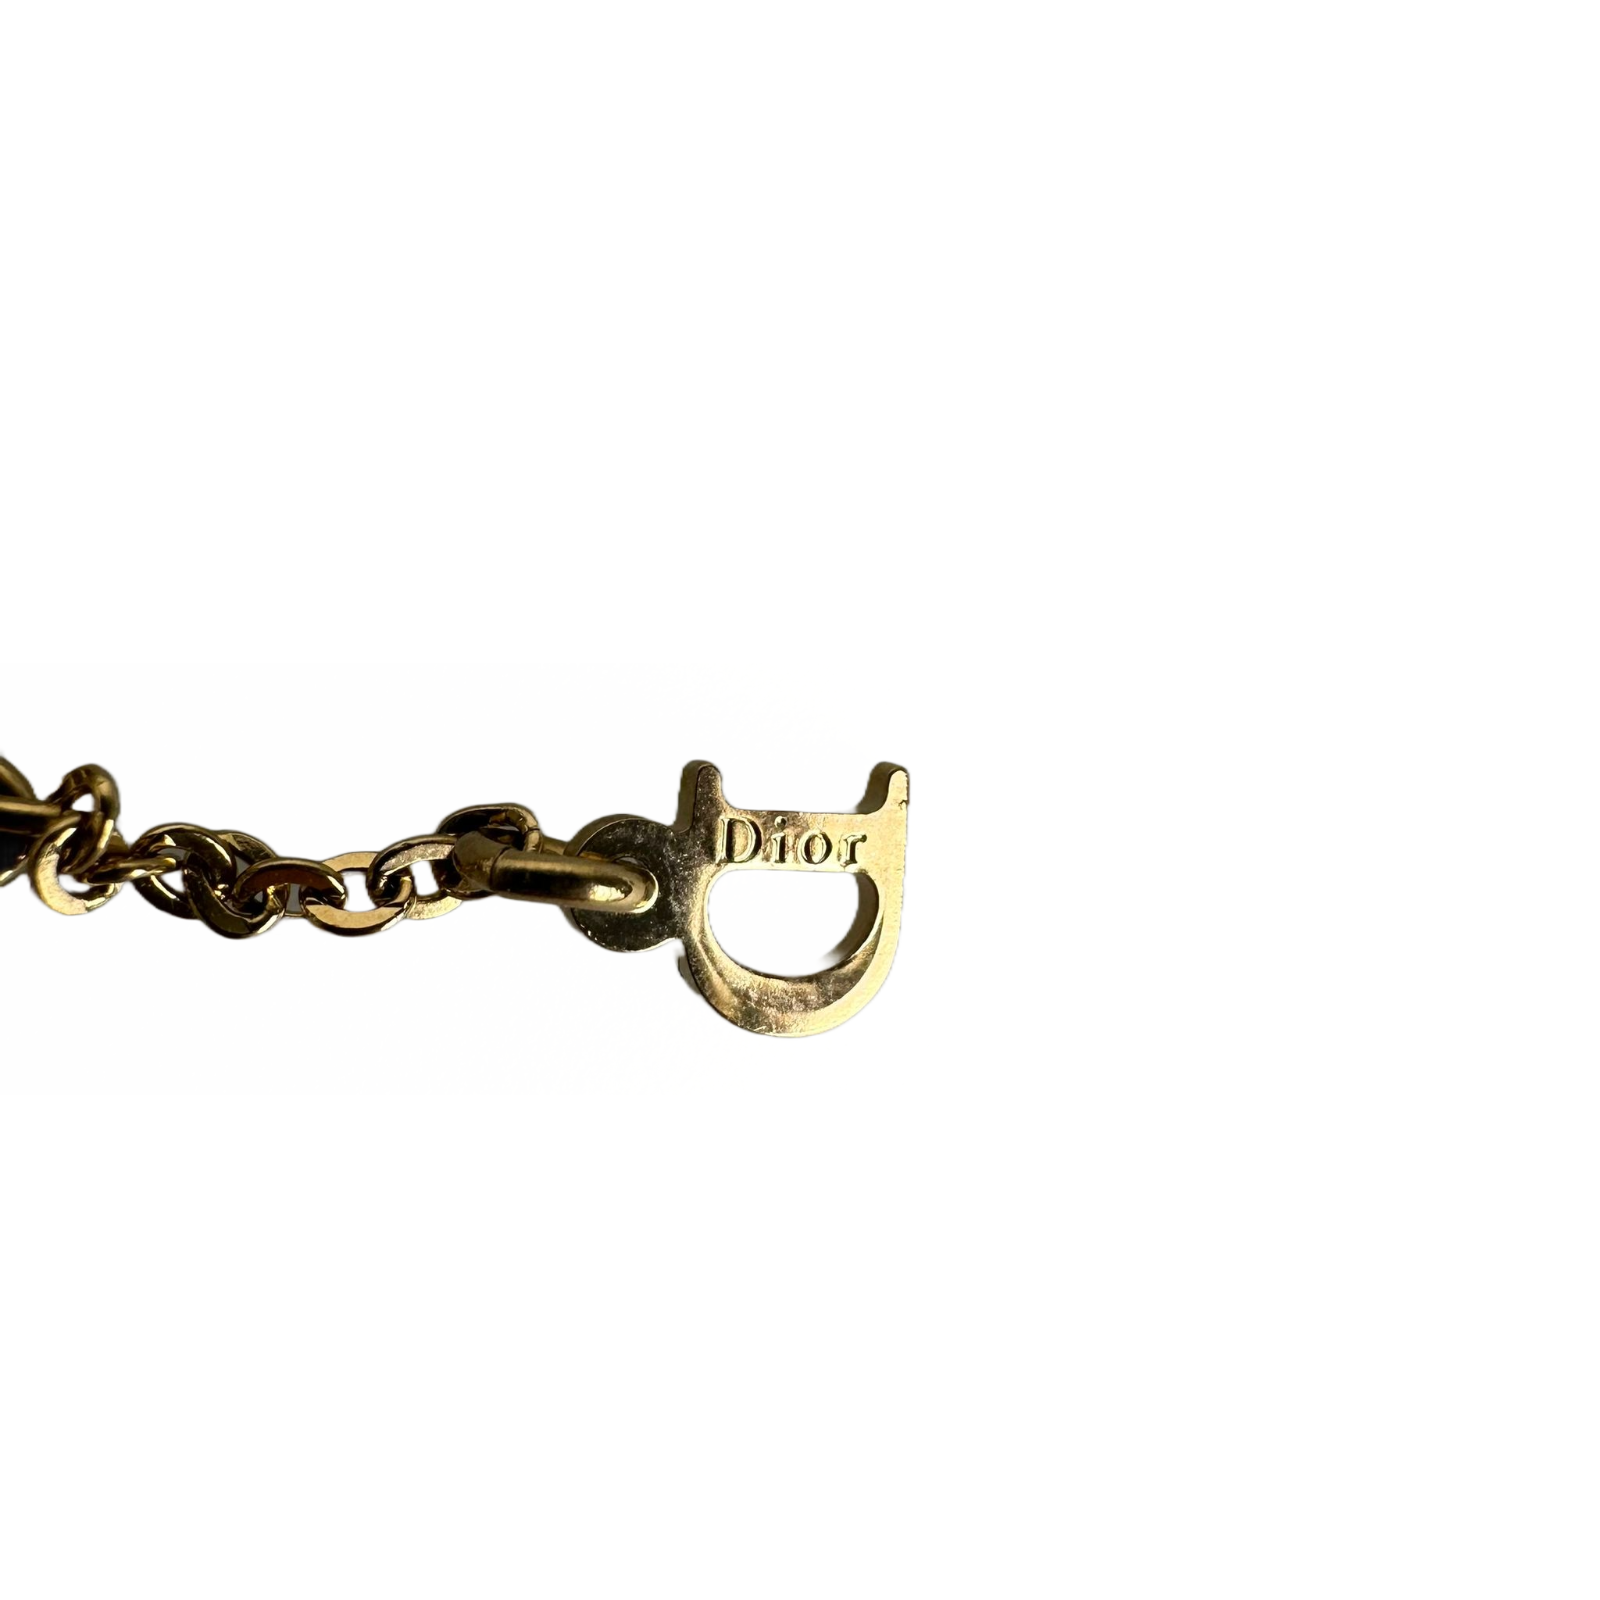 Christian Dior ‘I Love Dior’ Heart Bracelet Gold